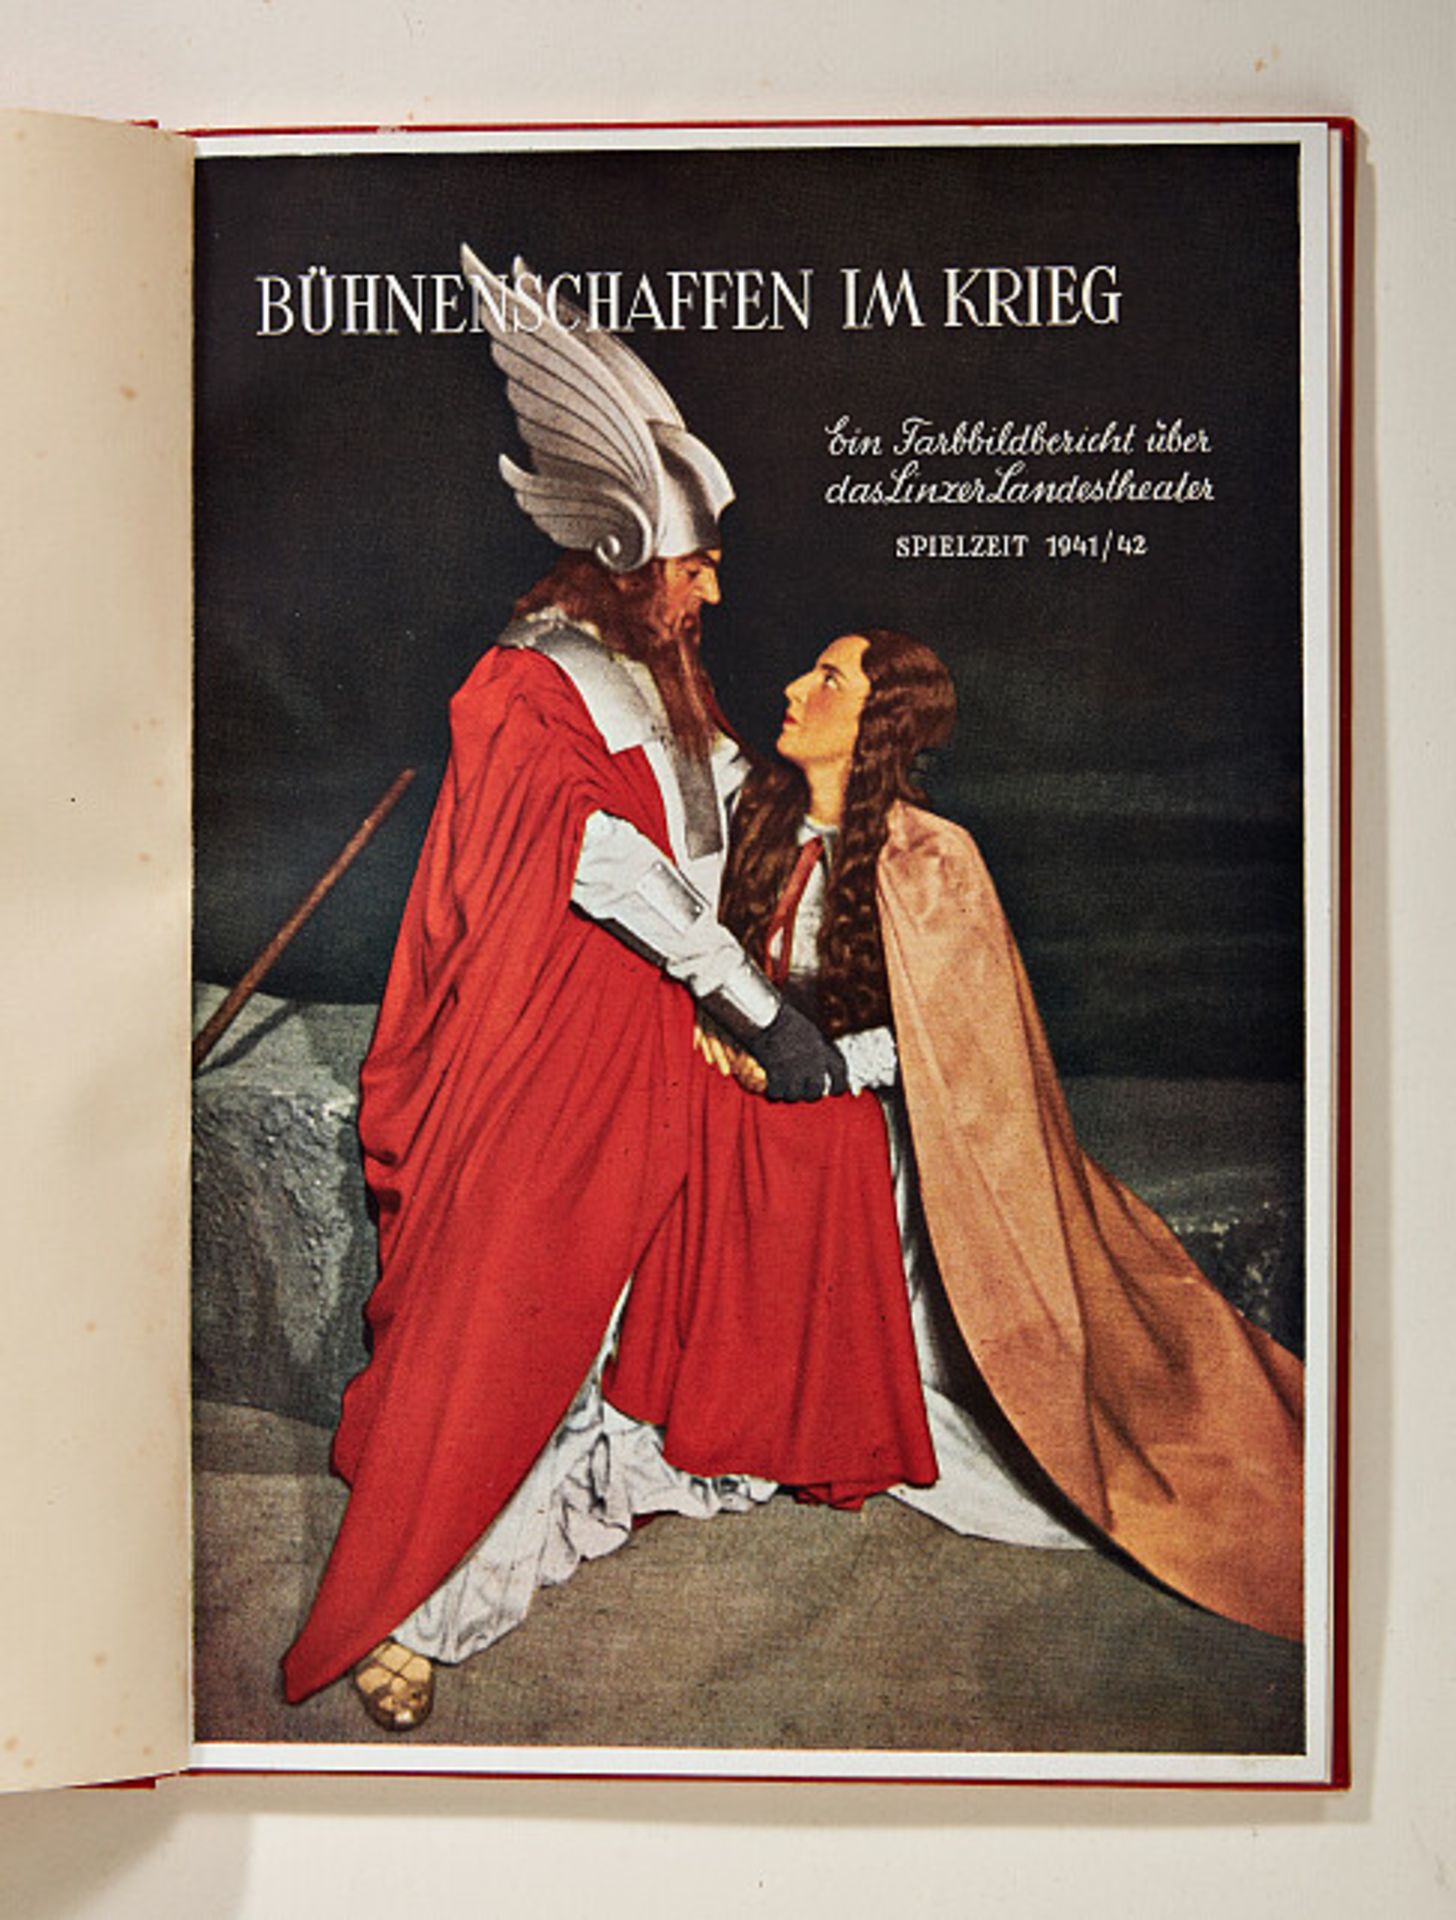 Deutsches Reich 1933 - 1945 - Zeitgeschichtliche Objekte : Picture Book of the Linz Theater.